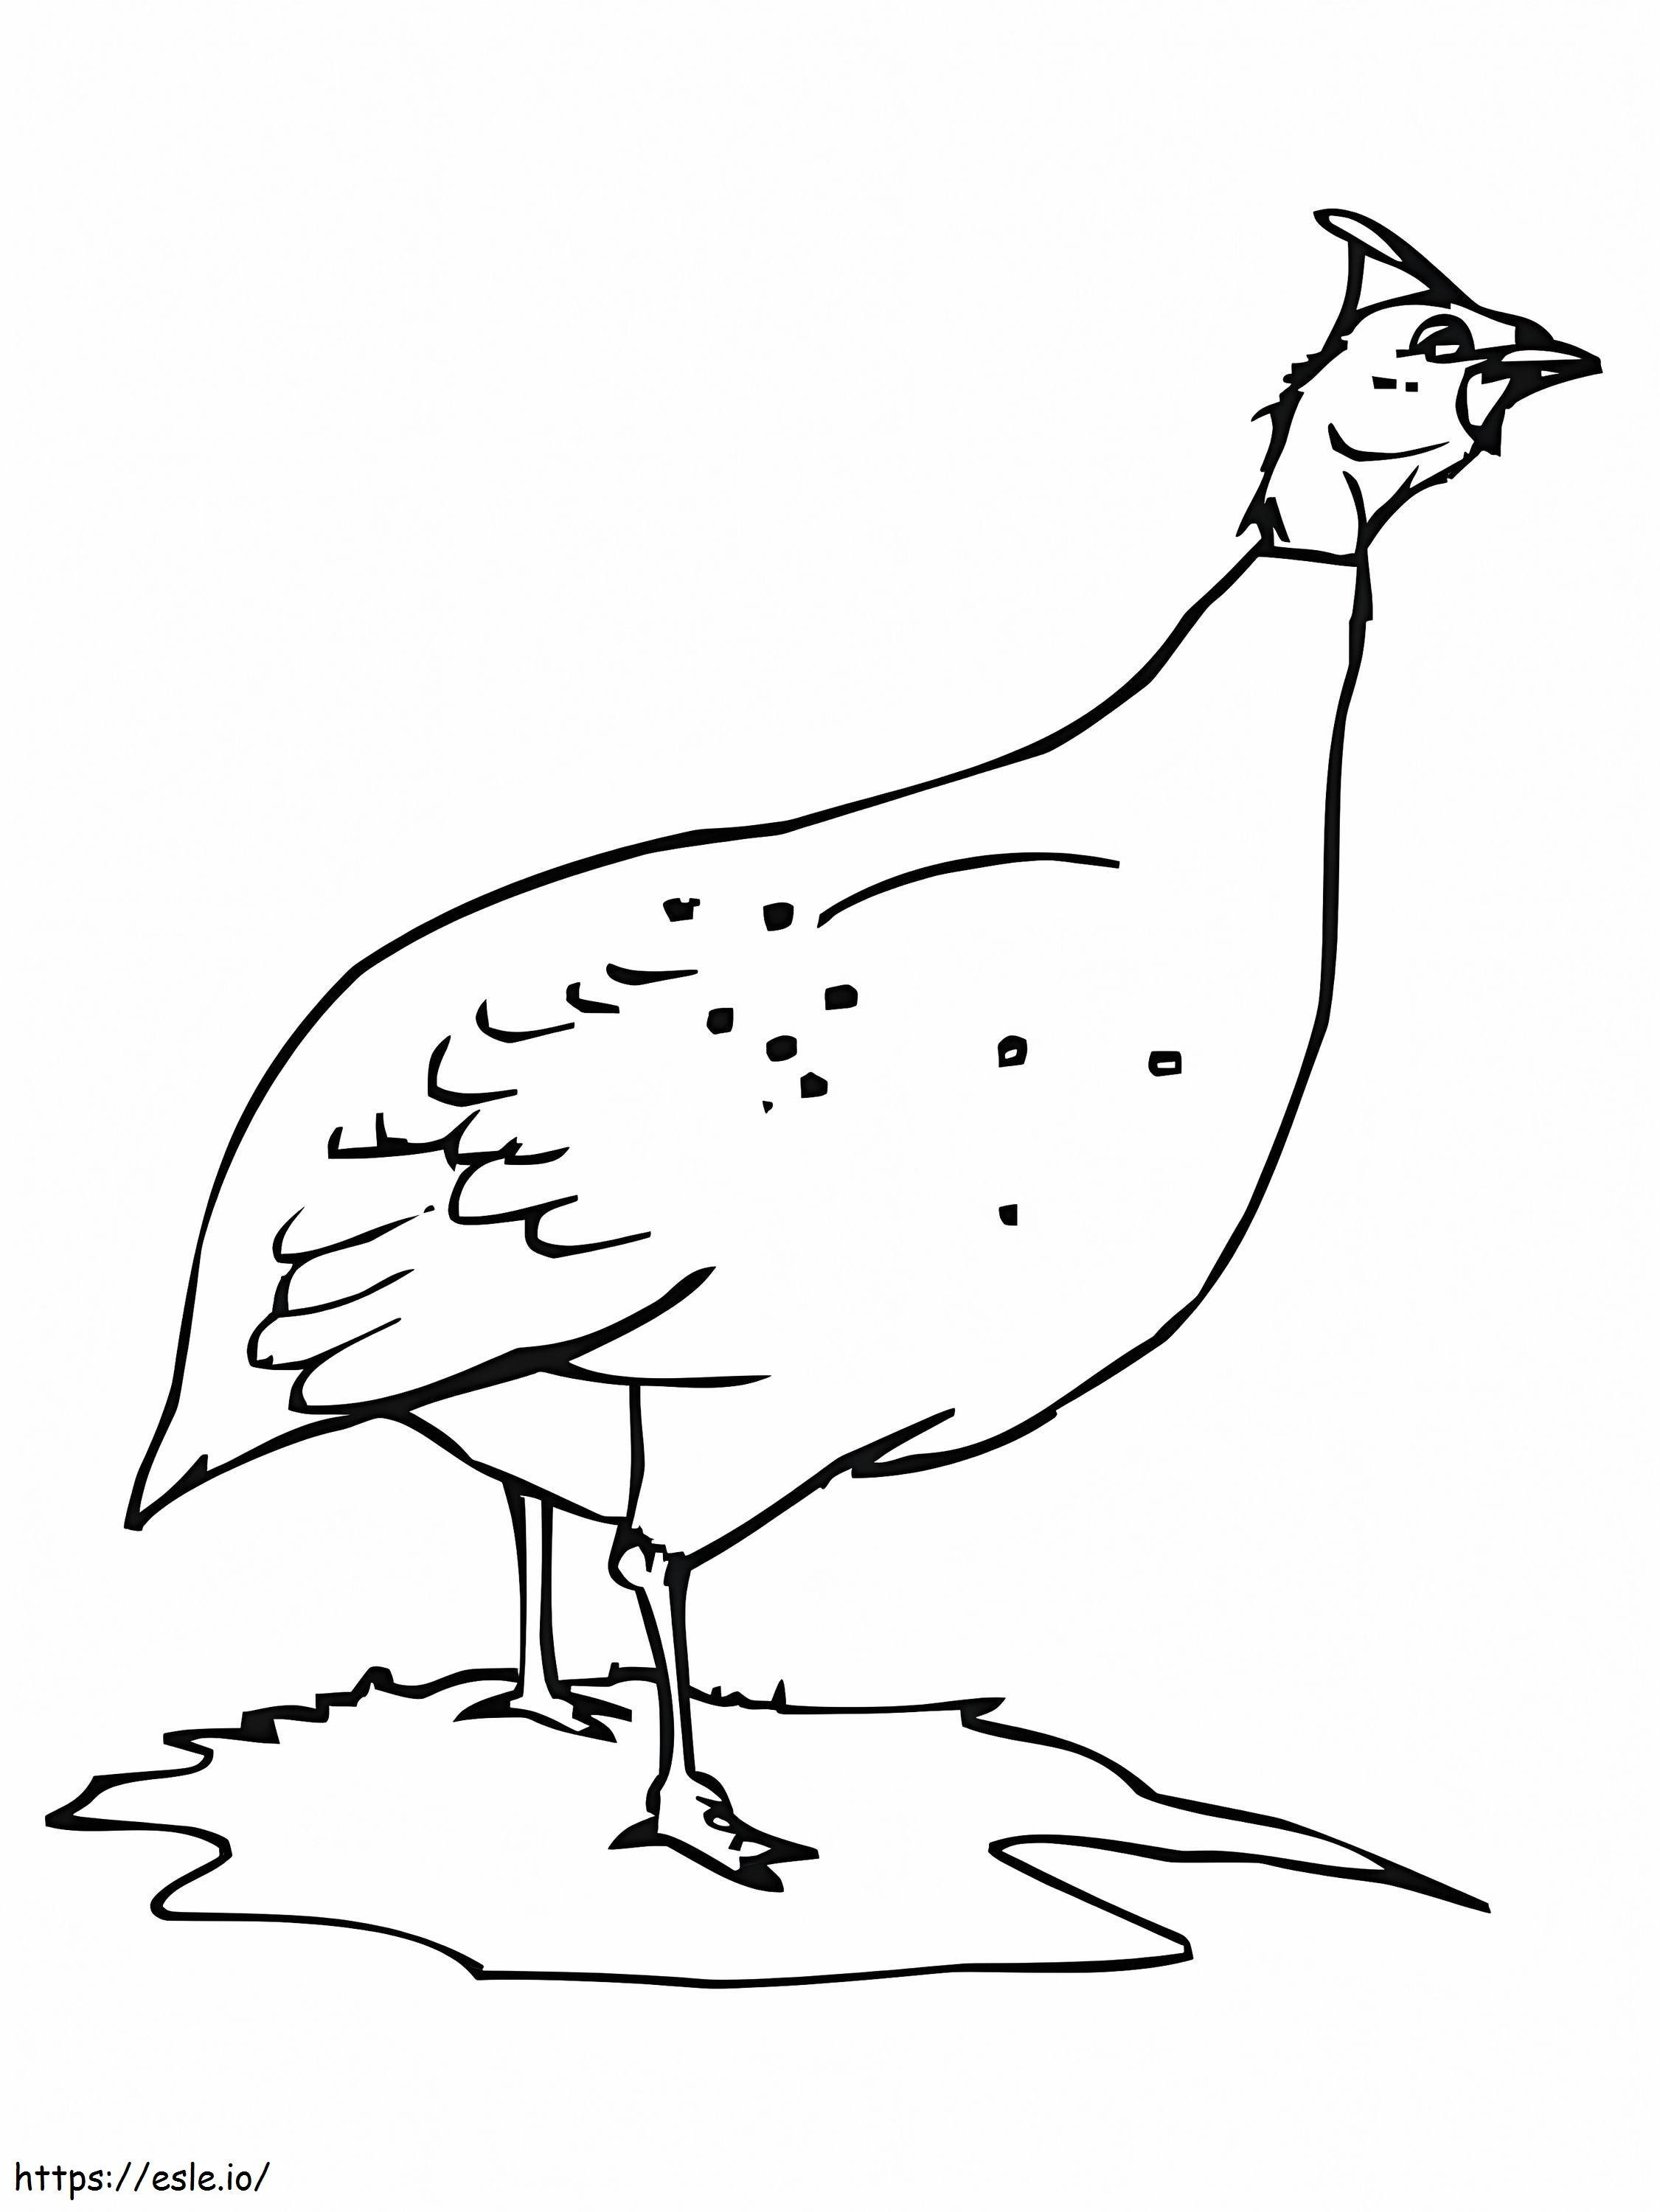 Parelhoen of kip kleurplaat kleurplaat